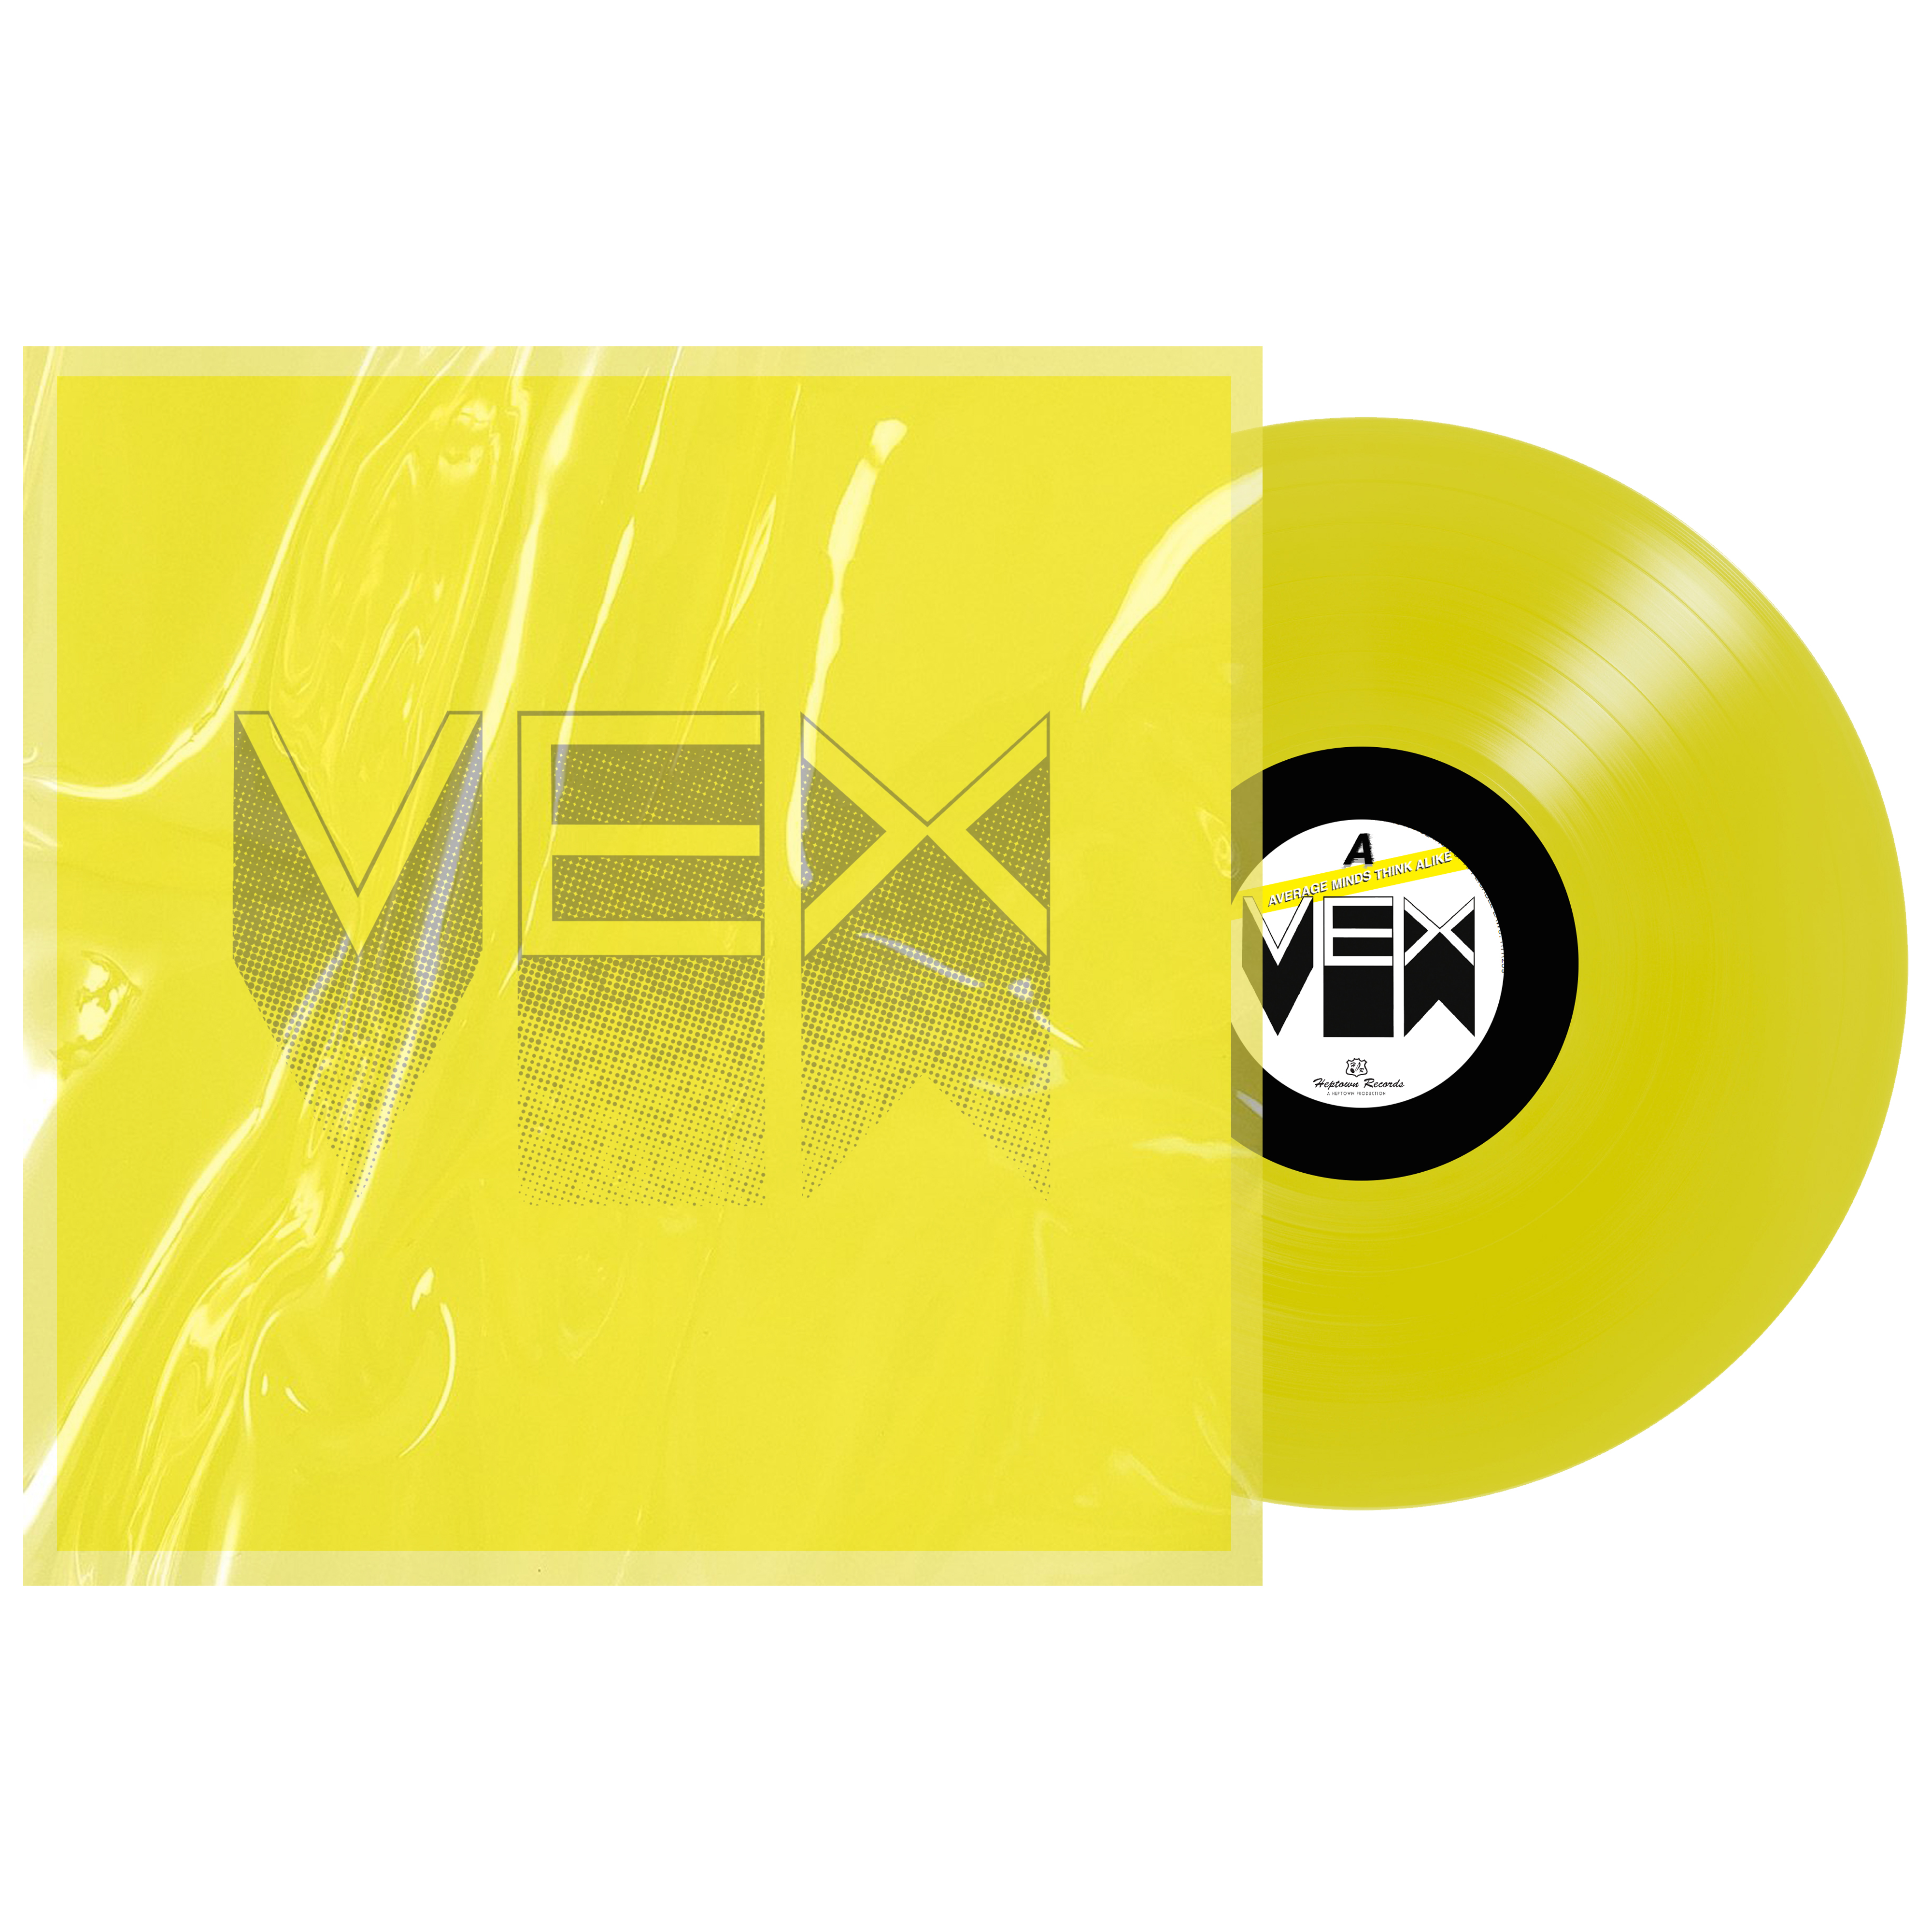 Vex-album-Average-Minds-Think-Alike-presale-liquid-sleeve